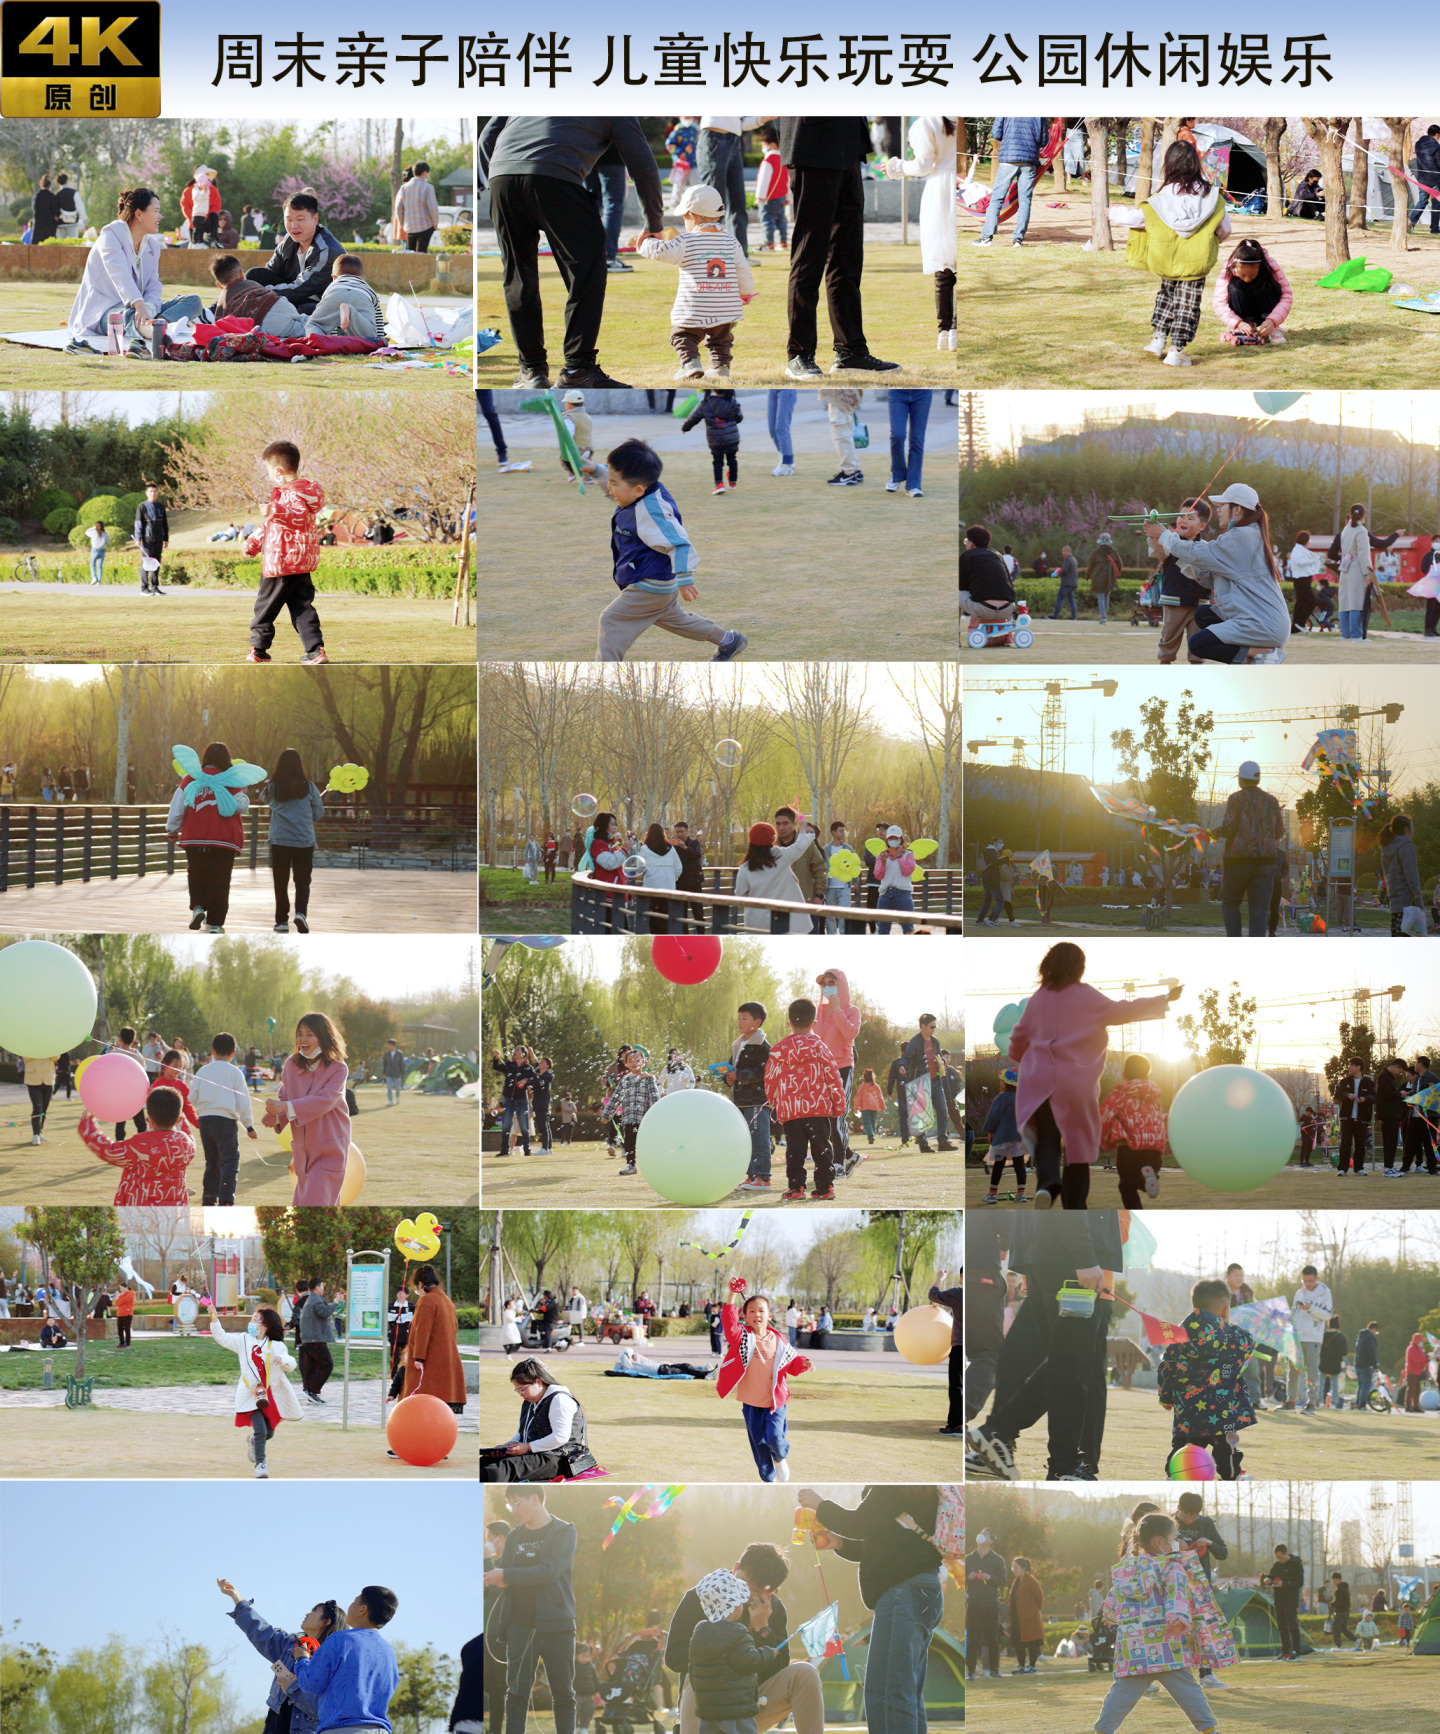 周末亲子陪伴 儿童快乐玩耍 公园休闲娱乐